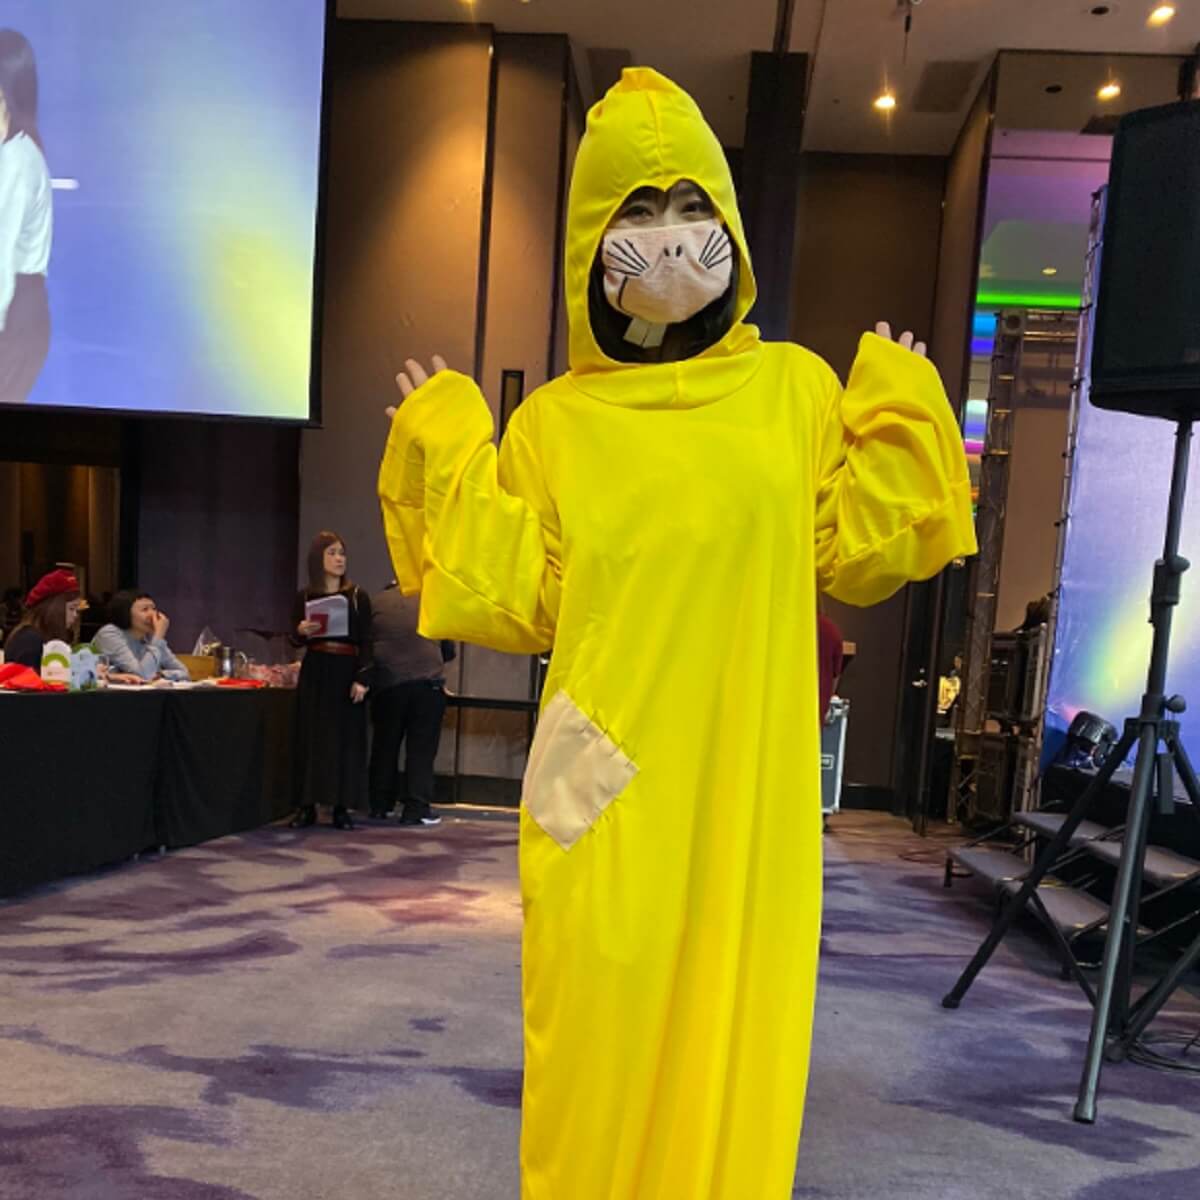 新型肺炎の防護服かよ 福原愛 台湾での仮装姿がタイムリーすぎると話題に 日刊サイゾー